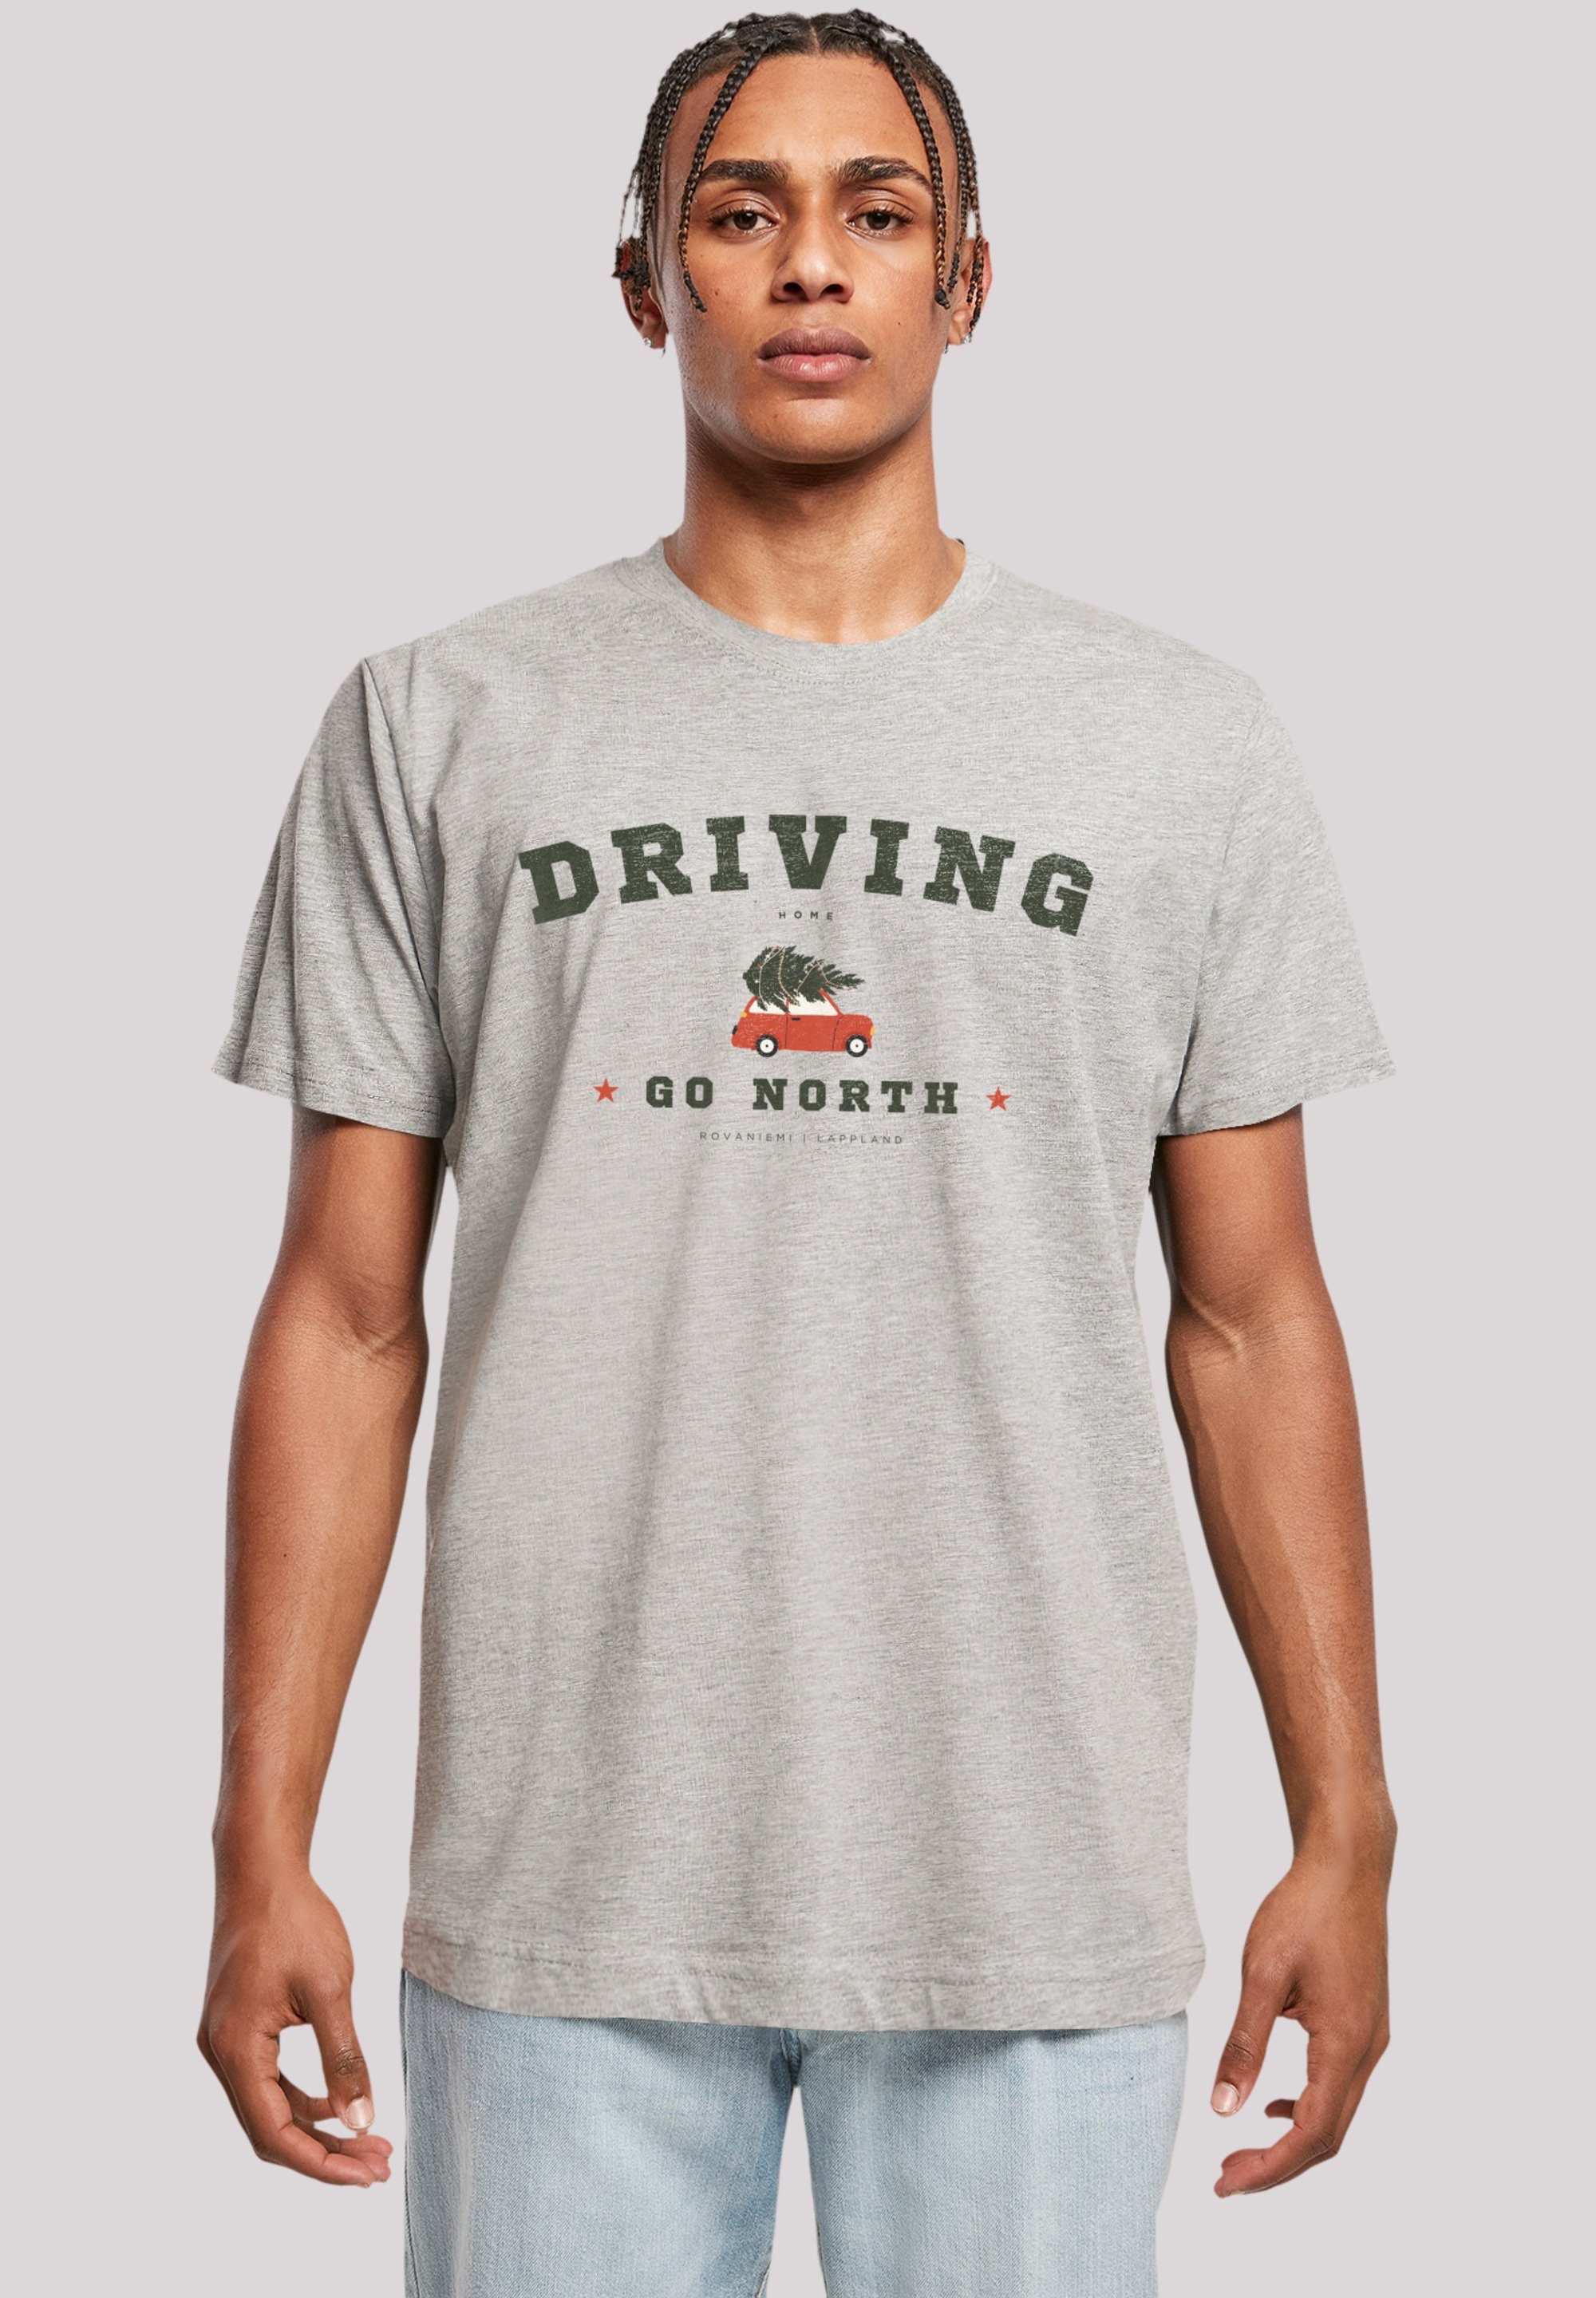 T-Shirt Home Driving grey Logo Geschenk, Weihnachten Weihnachten, heather F4NT4STIC